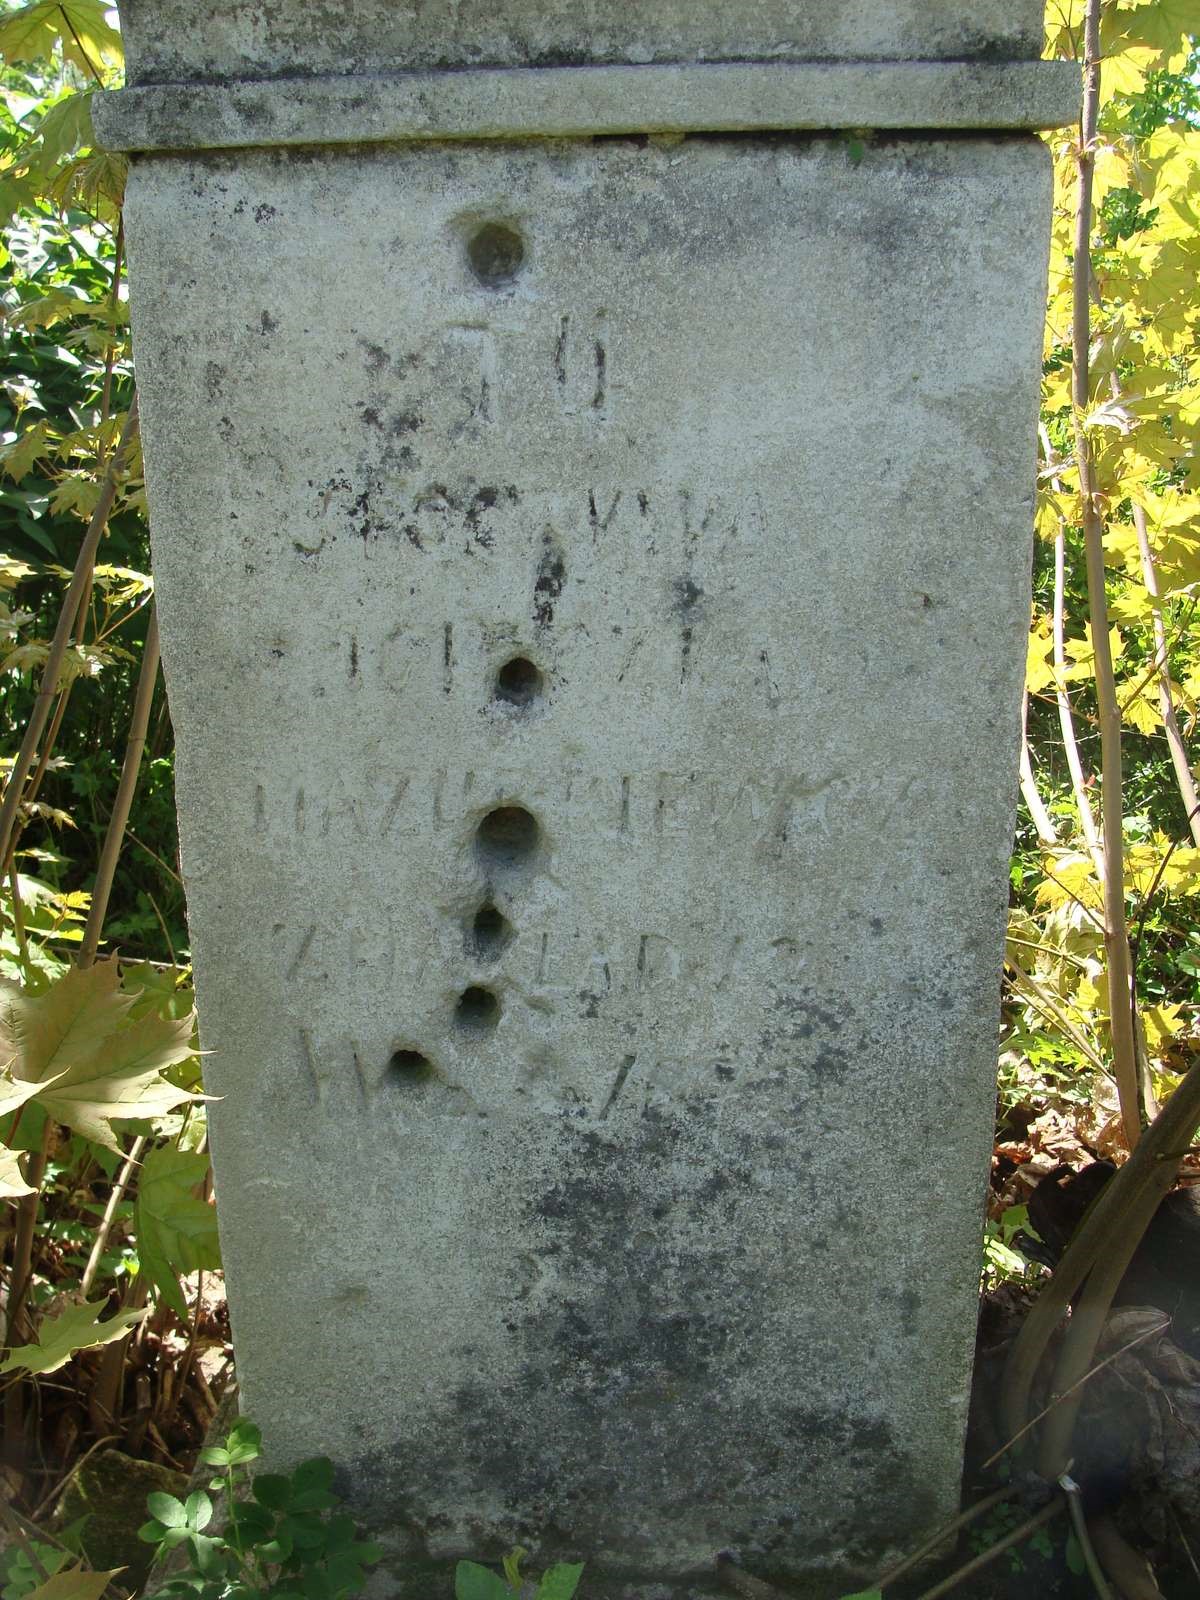 Second inscription from the gravestone of Agnieszka and Jan Mazurkiewicz, cemetery in Łozowa